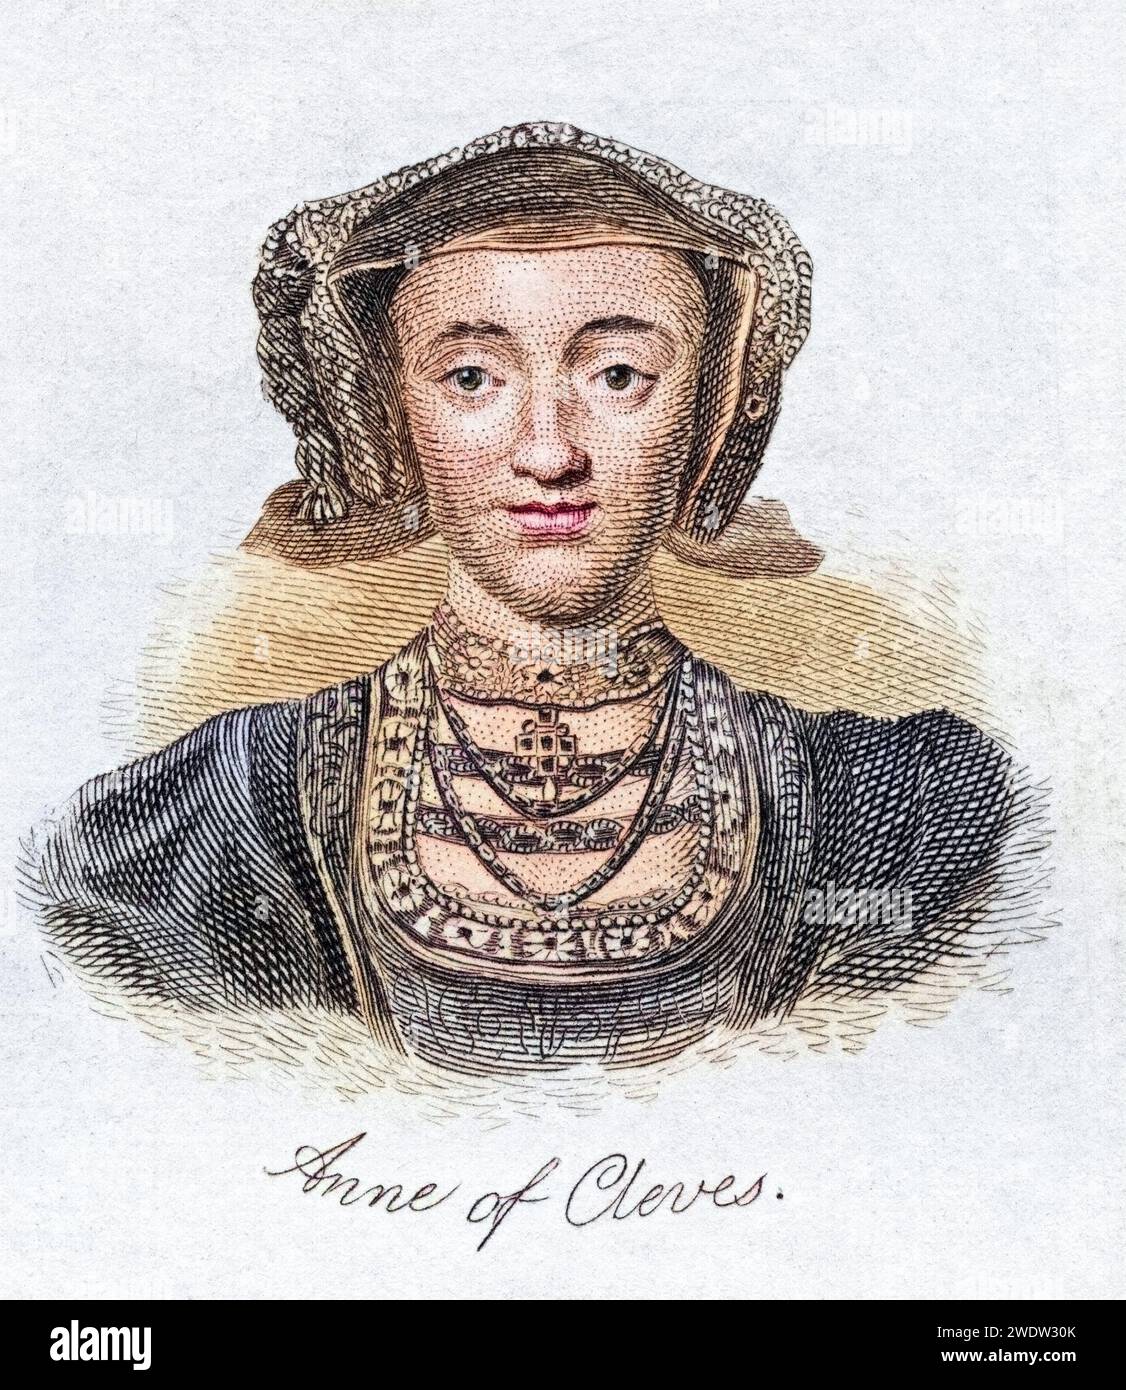 Anne von Kleve, 1515–1557, Königingemahlin von England Vierte Ehefrau von Heinrich VIII Aus dem Buch Crabbs Historical Dictionary, veröffentlicht 1825, Historisch, digital restaurierte Reproduktion von einer Vorlage aus dem 19. Jahrhundert, Datum nicht angegeben Stockfoto